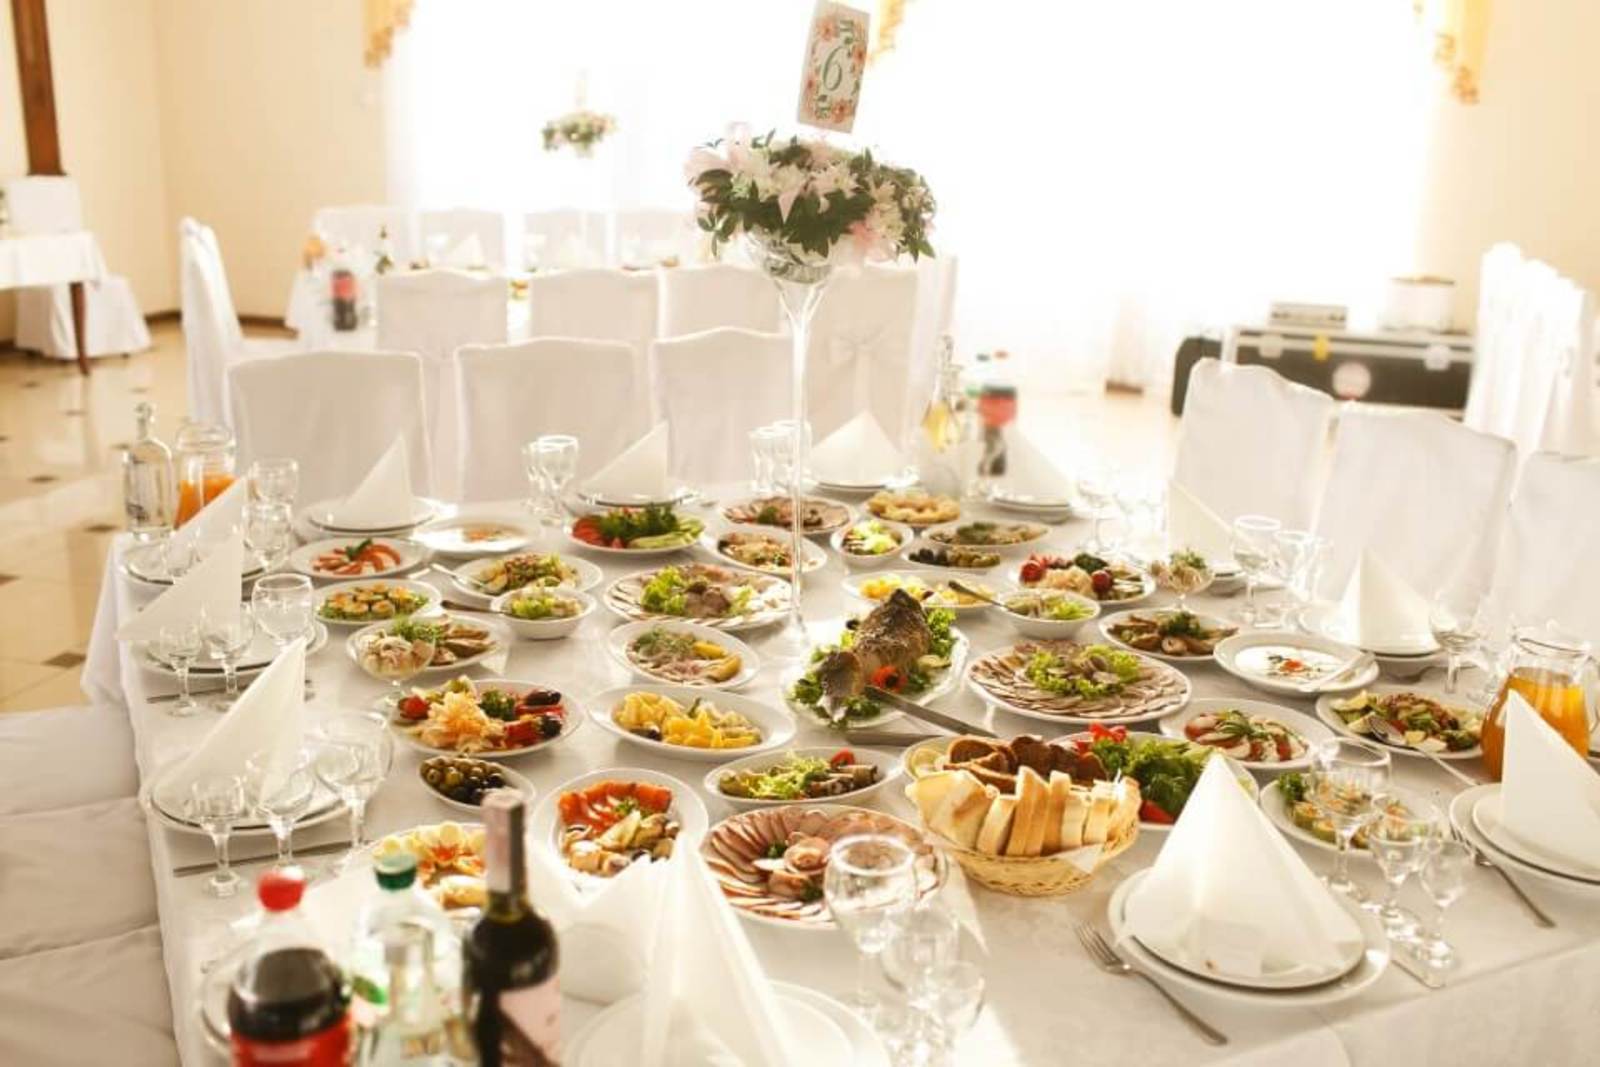 svadobny stol s jedlom